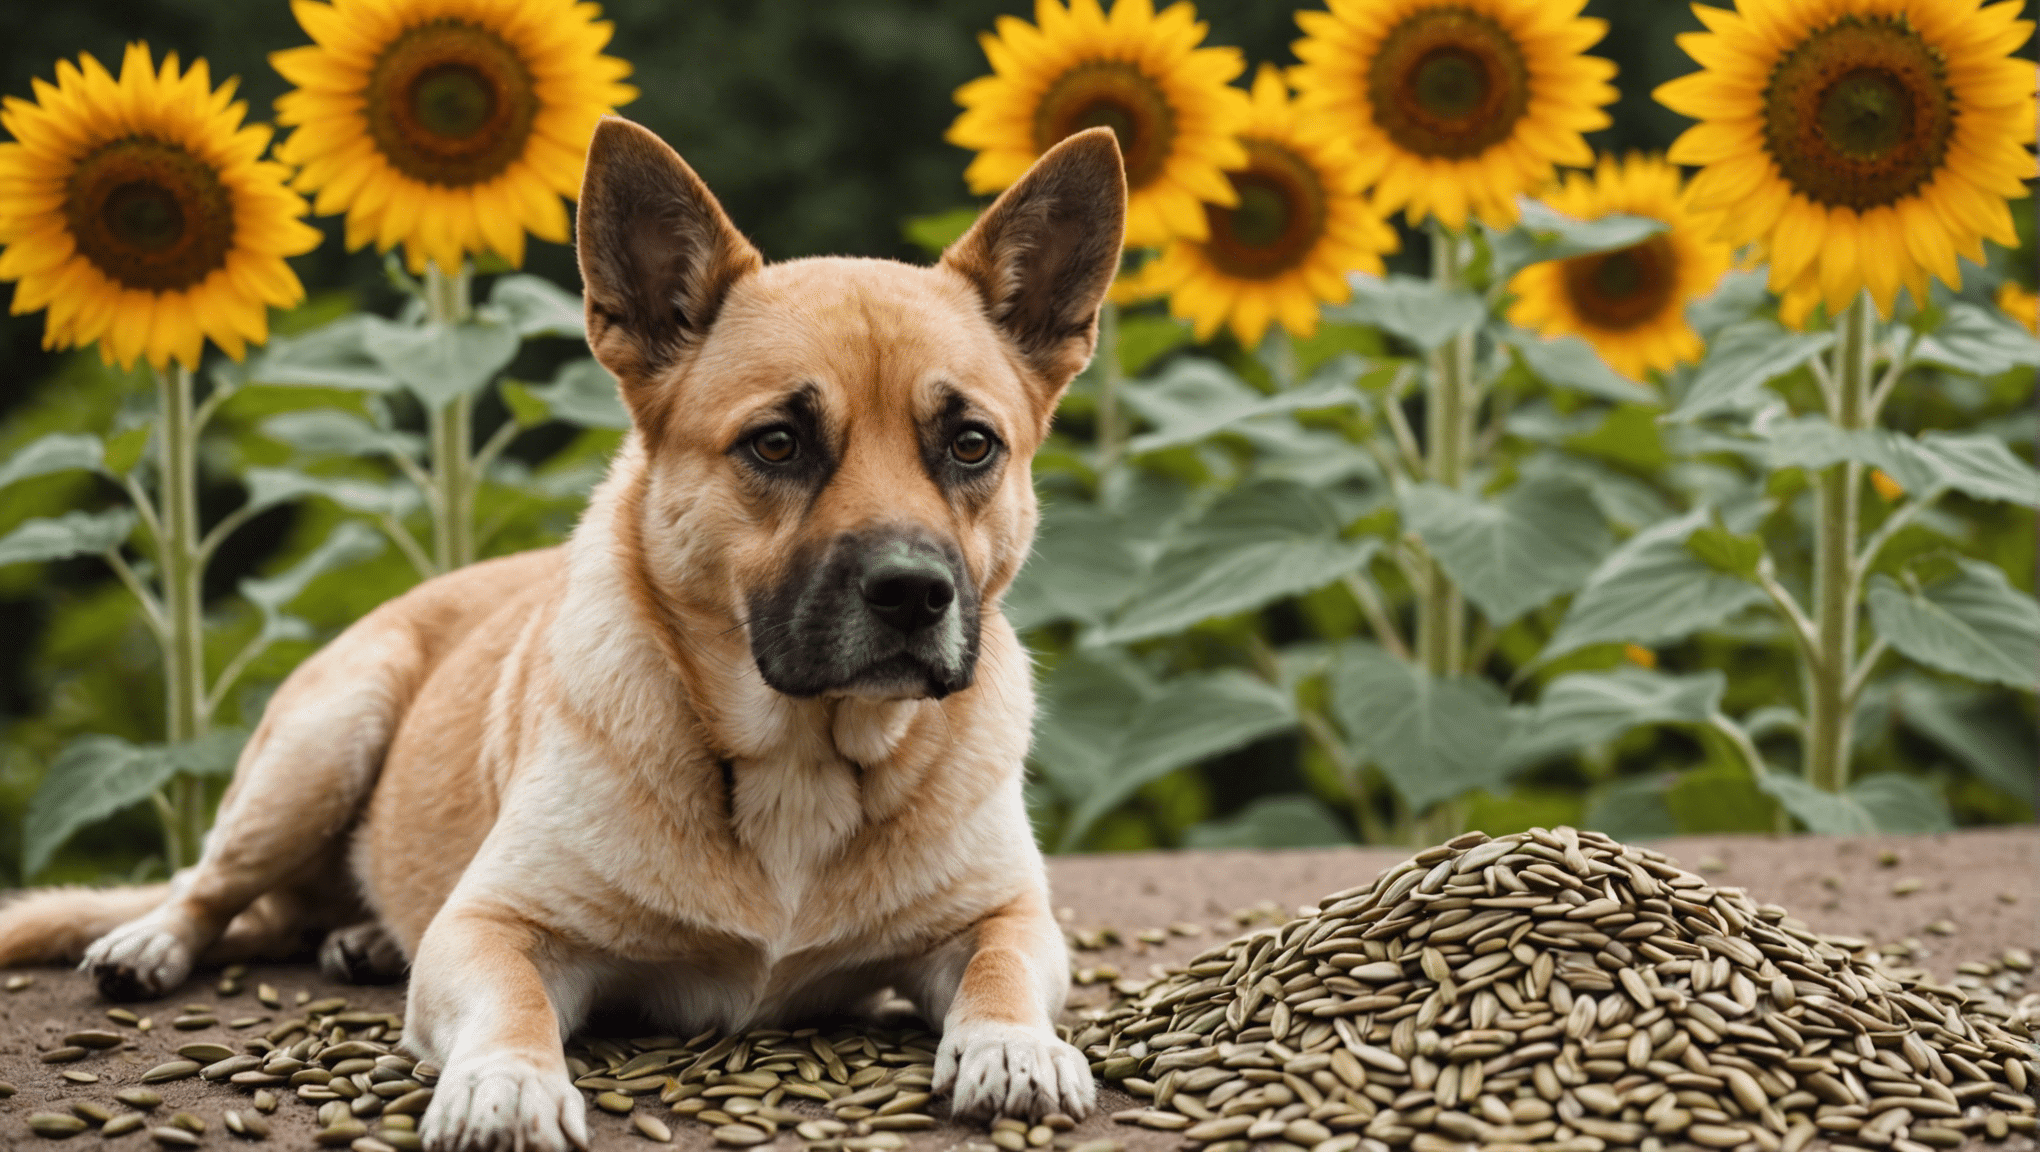 Finden Sie heraus, ob Sonnenblumenkerne für Hunde unbedenklich sind und erfahren Sie mehr über mögliche Risiken und Vorteile für Ihren vierbeinigen Begleiter.